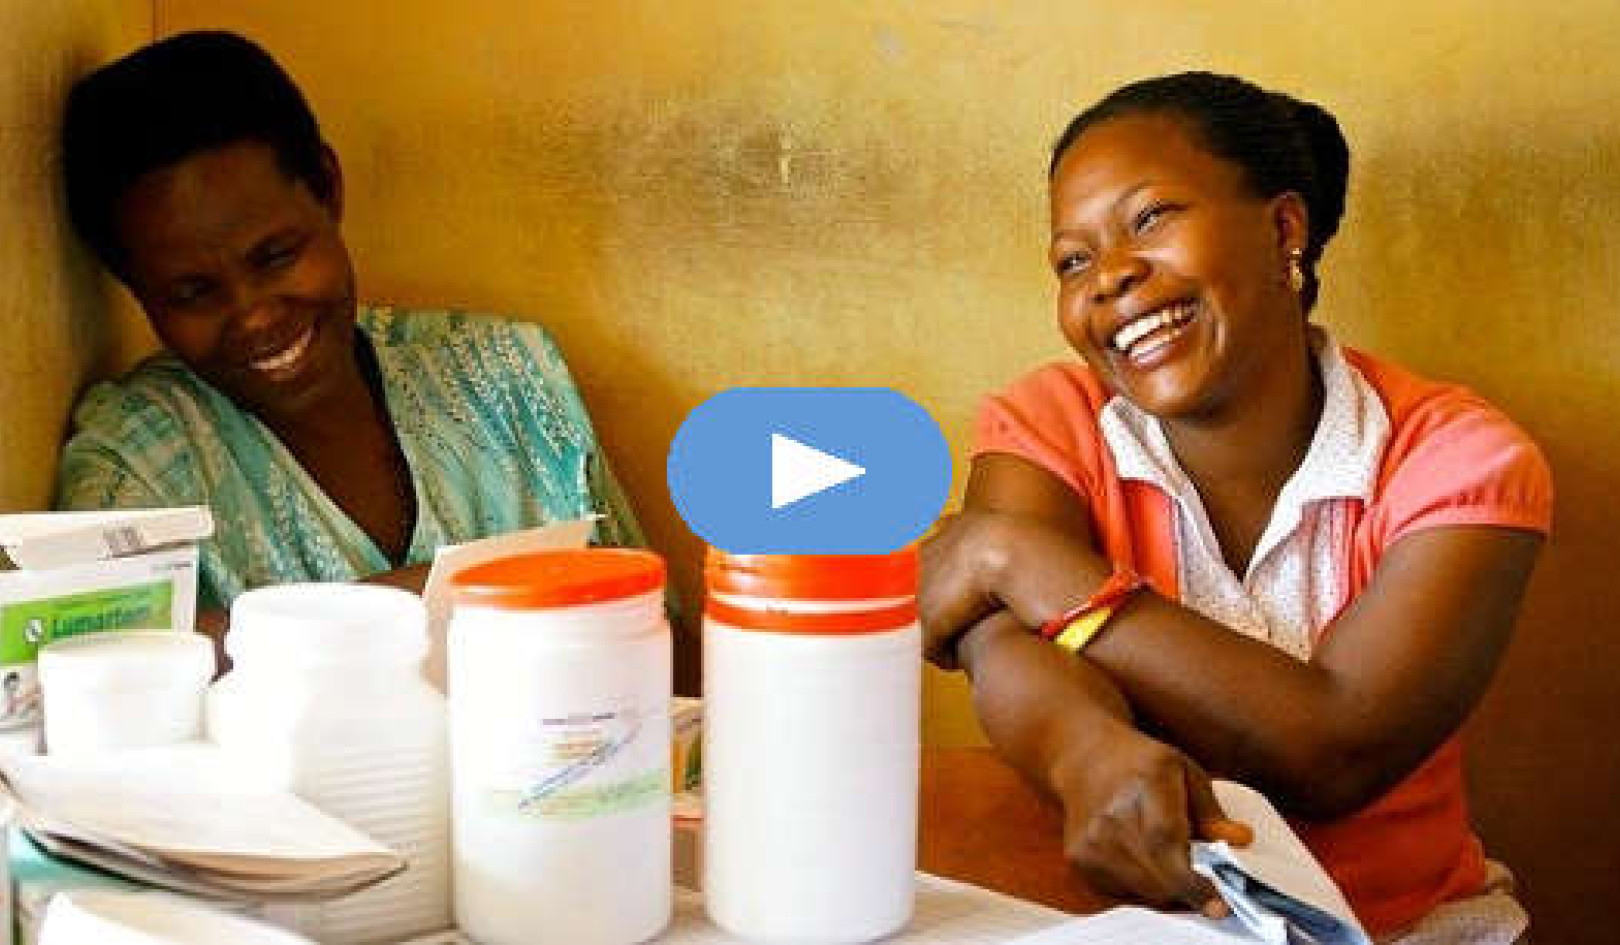 Az örömök bősége mindenki számára lehetséges (videó)